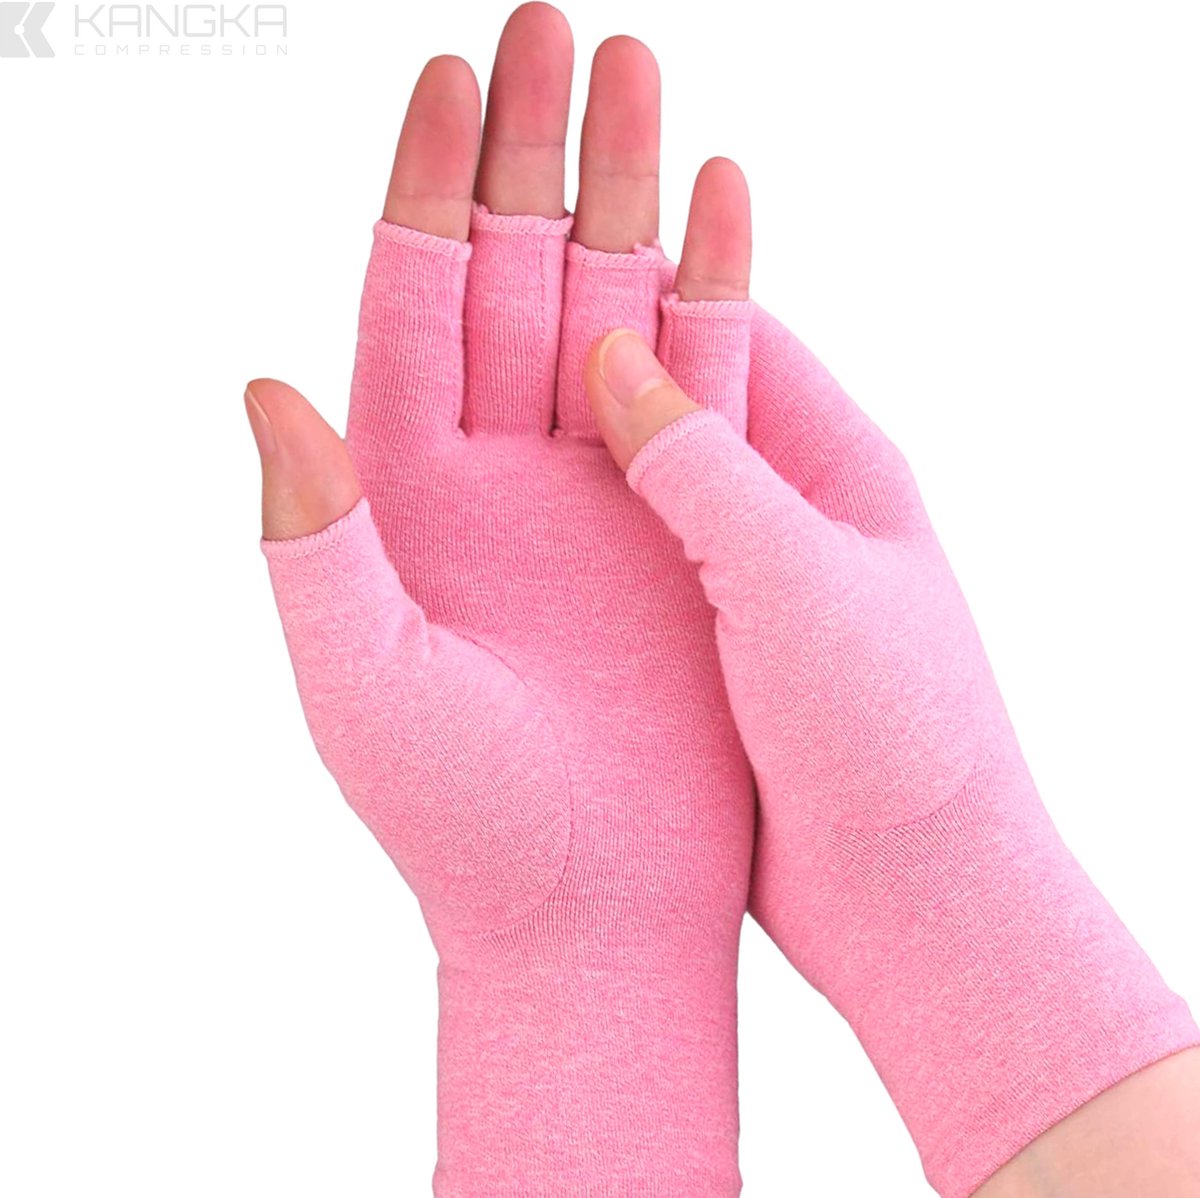 Kangka Reuma Artritis Handschoenen met Open Vingertoppen Design Maat S - Roze Kleur